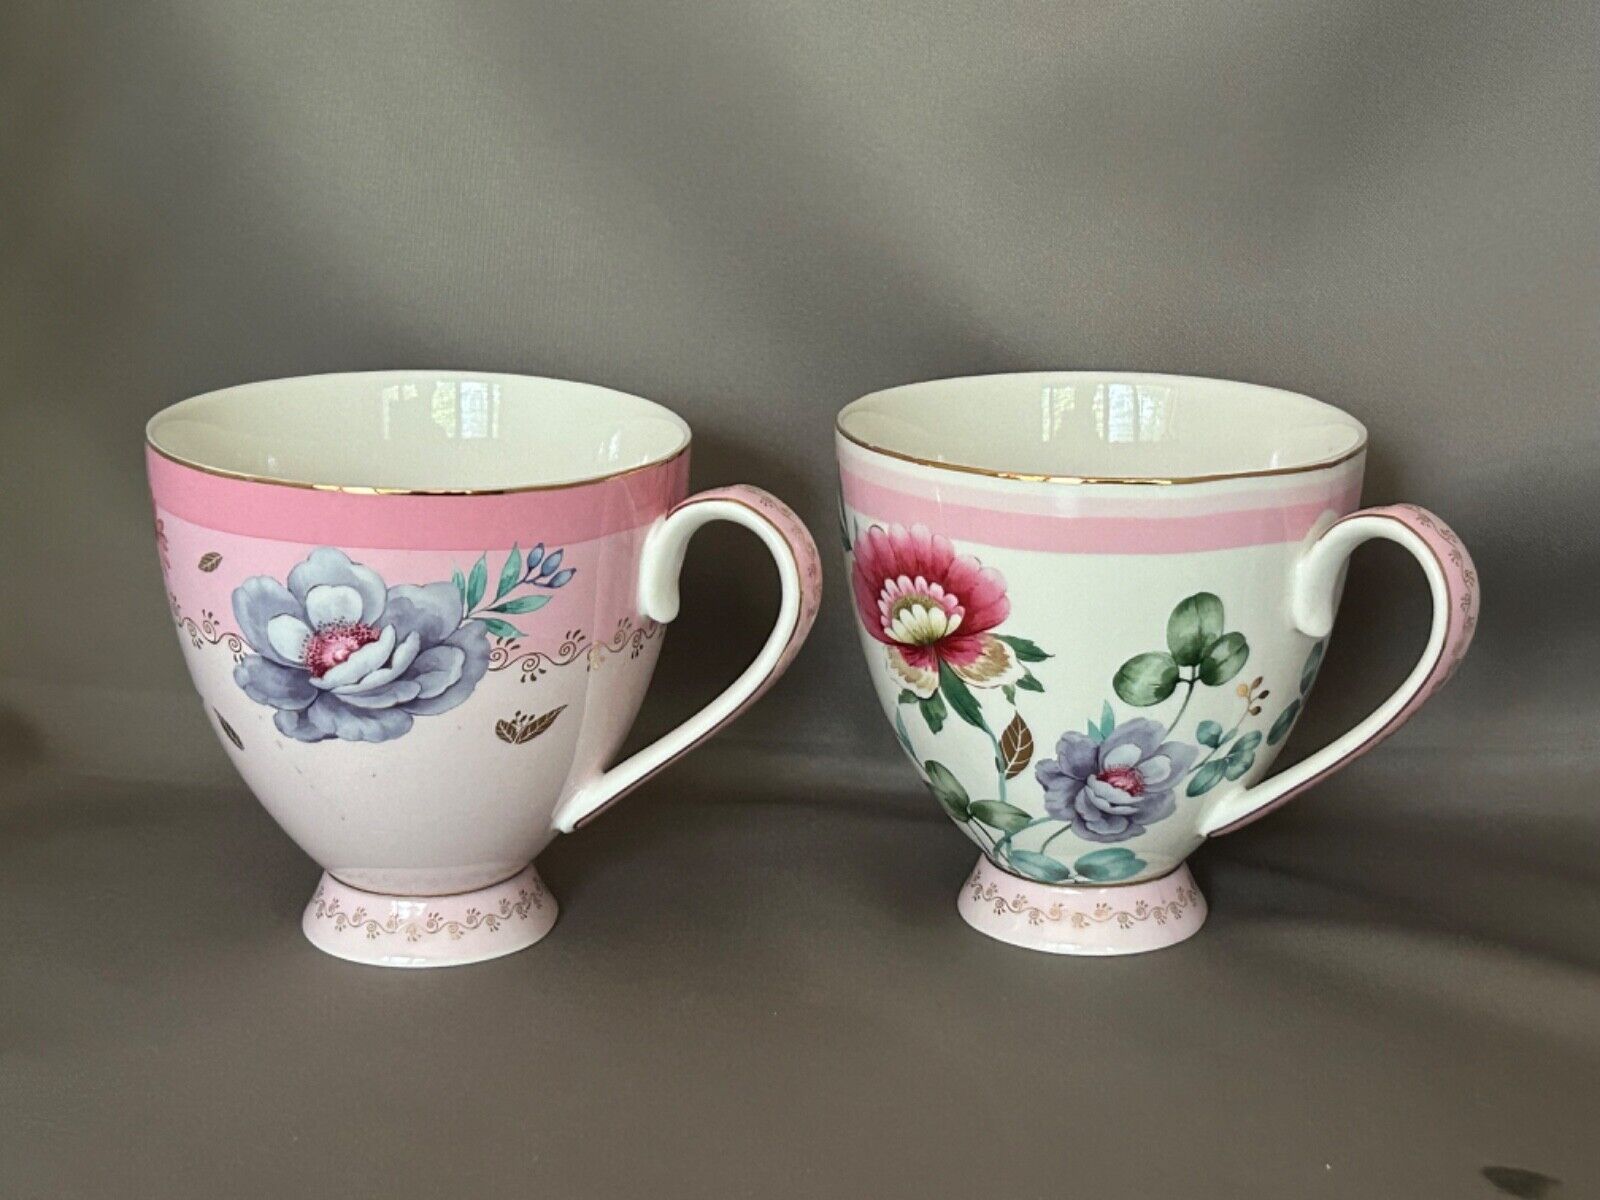 2 Grace Teaware pedestal mugs. 9 oz. Fine porcelain. Mint condition